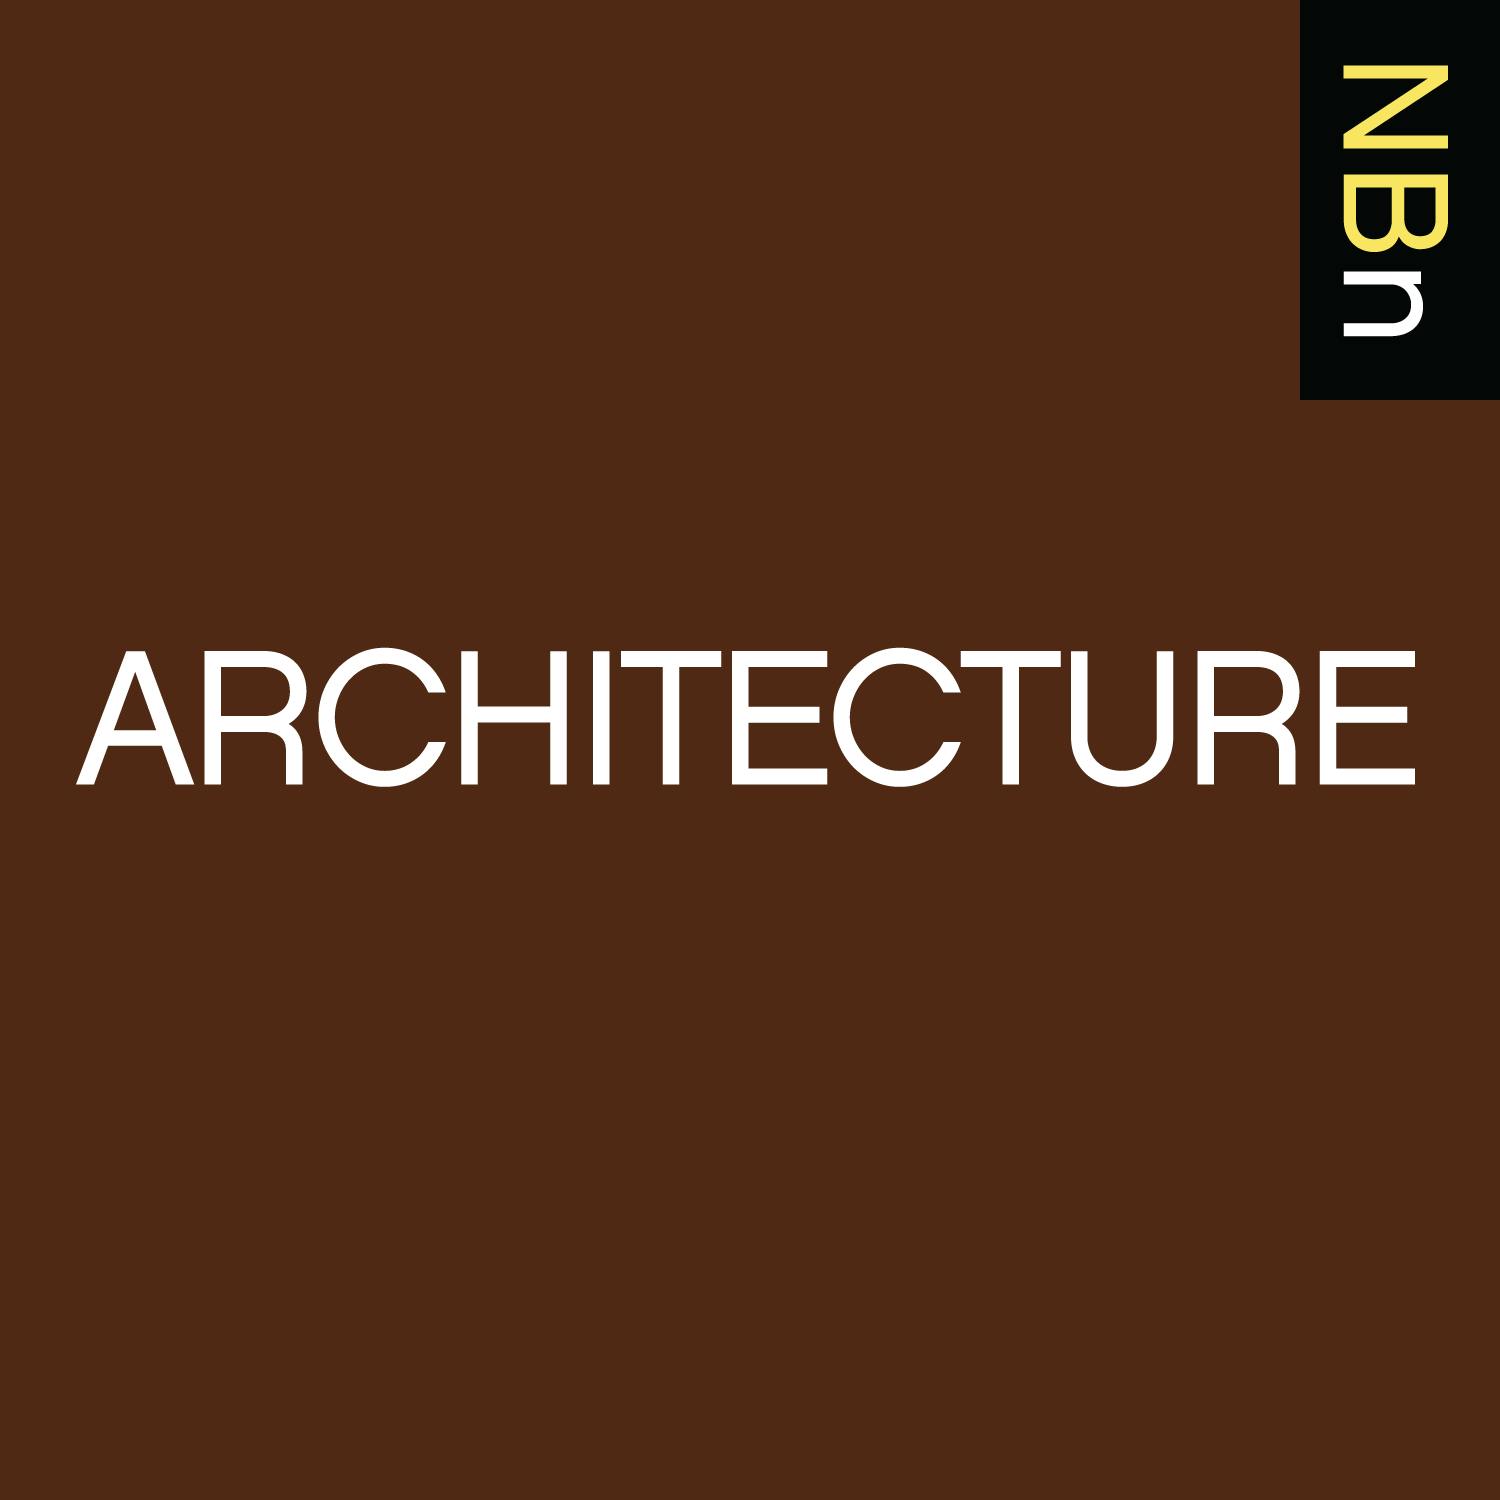 Premium Ad-Free: New Books in Architecture podcast tile